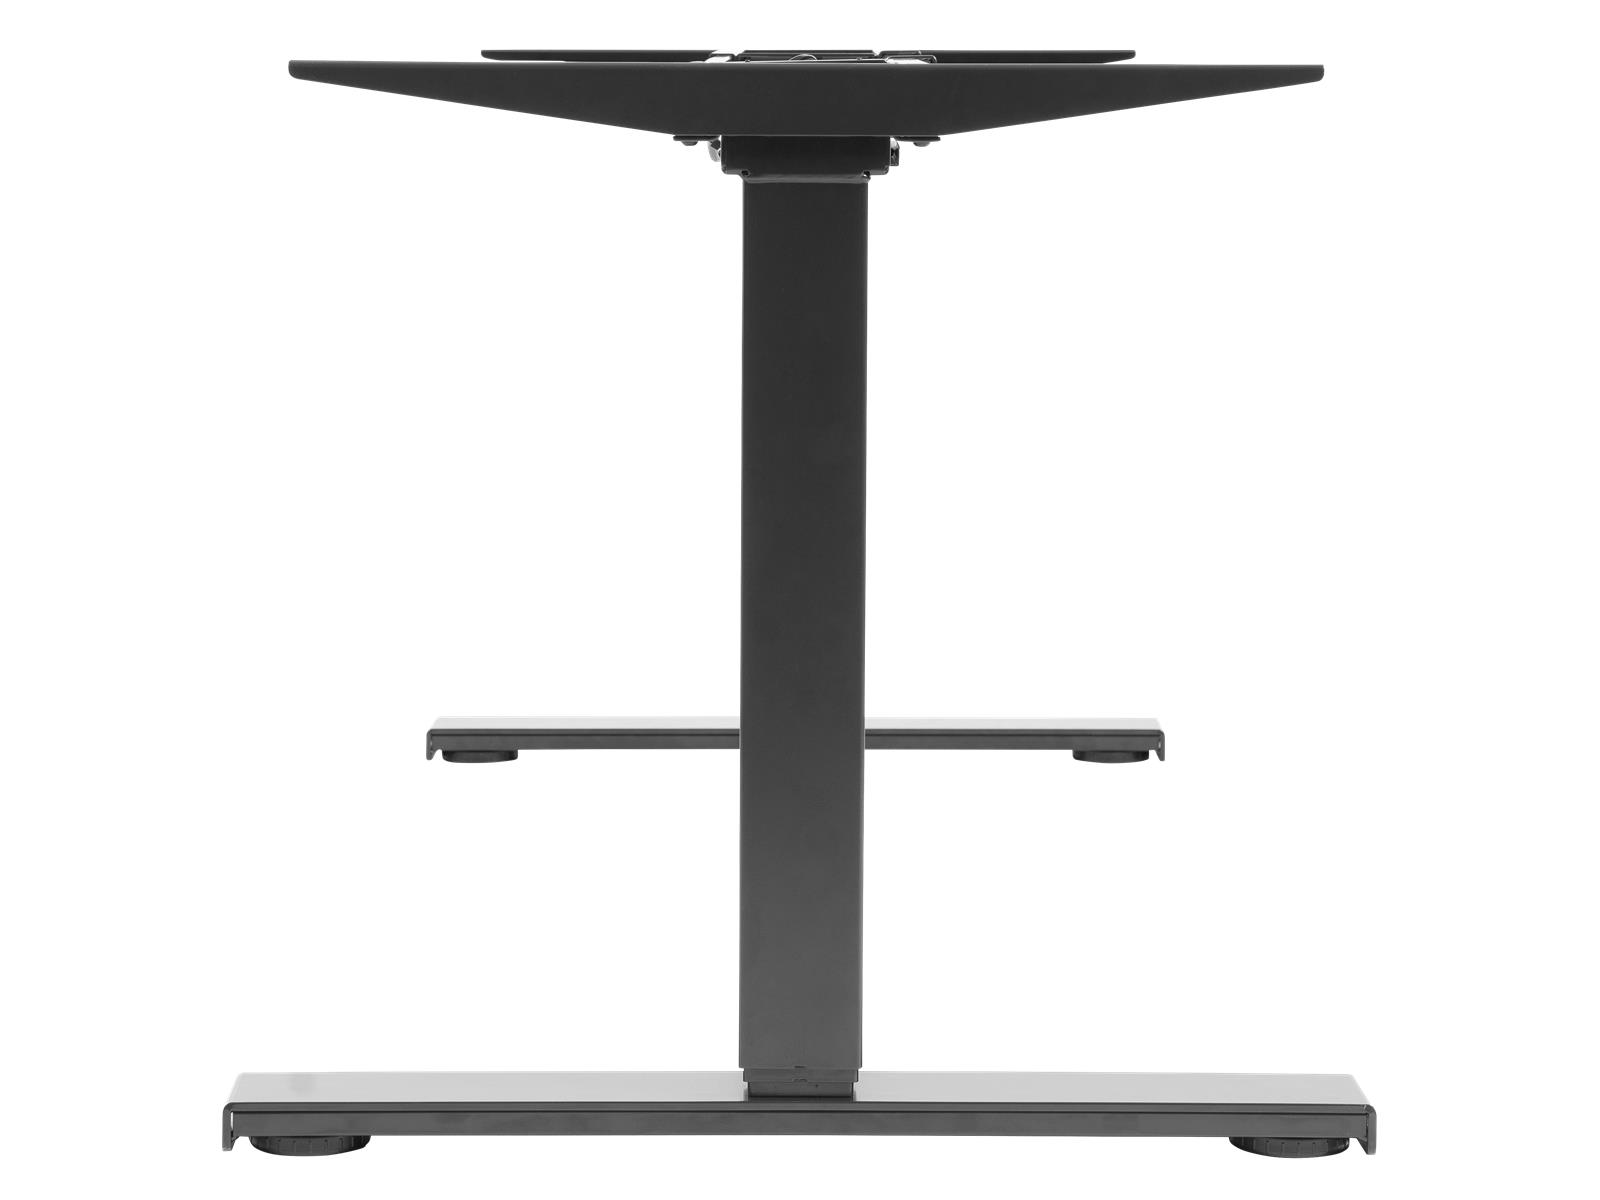 Tischgestell imstande ''smart-b'' max. 70kg, Breite 84-130cm, Höhe 73-123cm